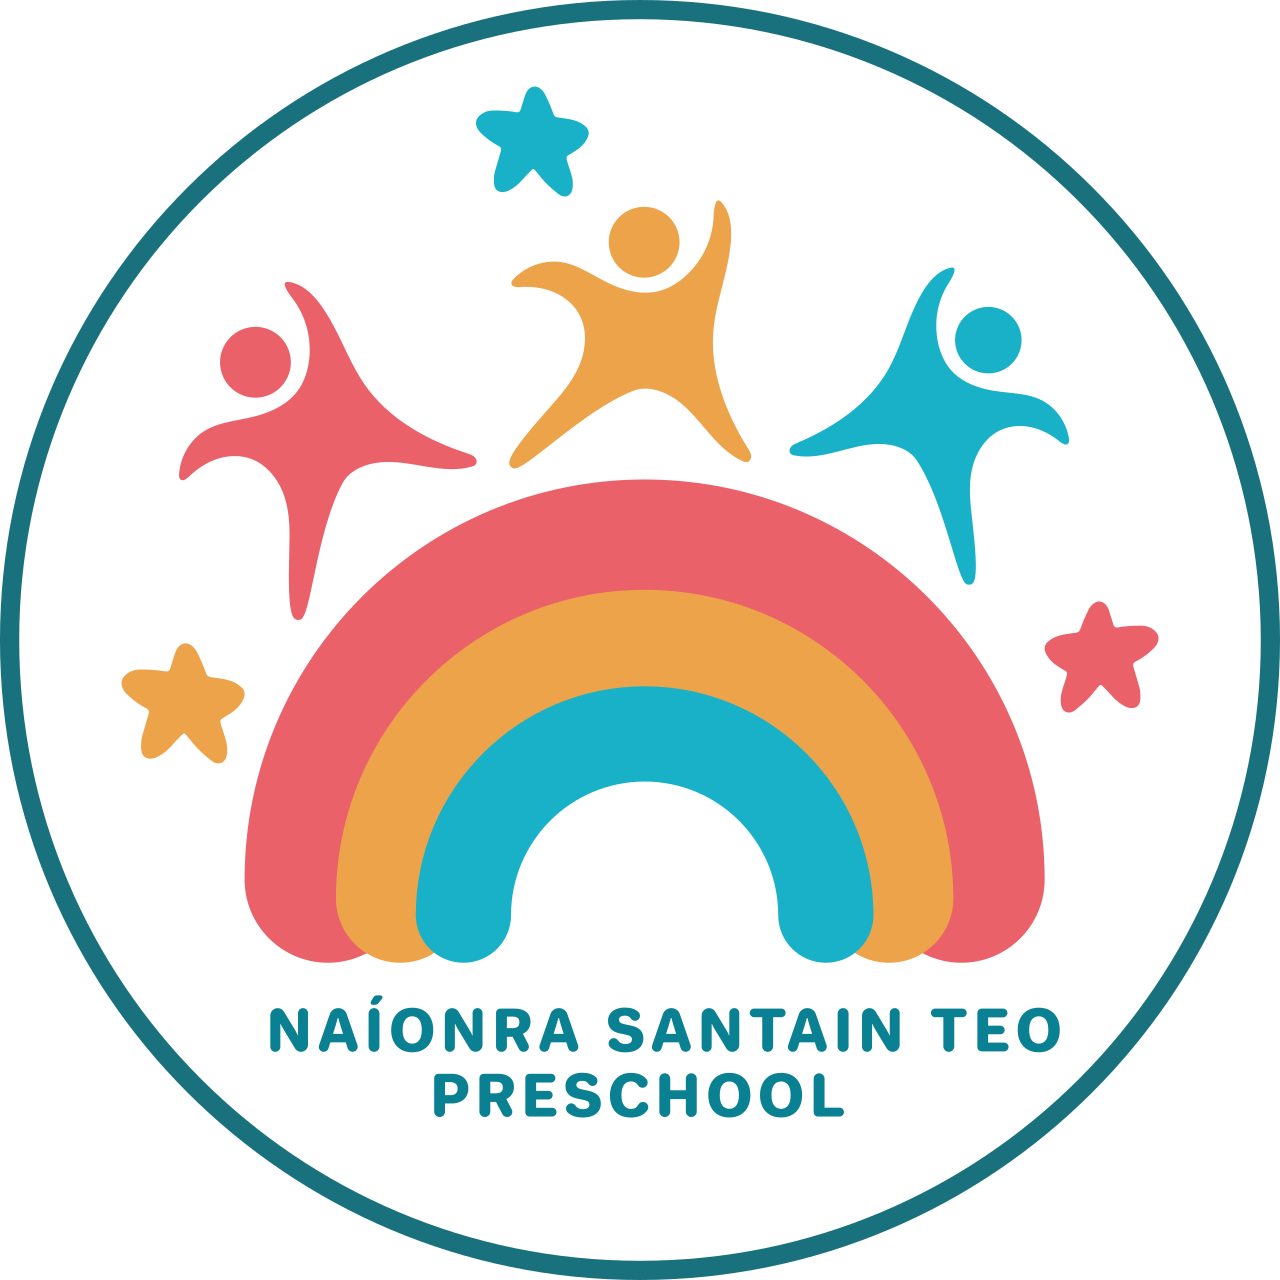 Naíonra Santain Teo 's logo